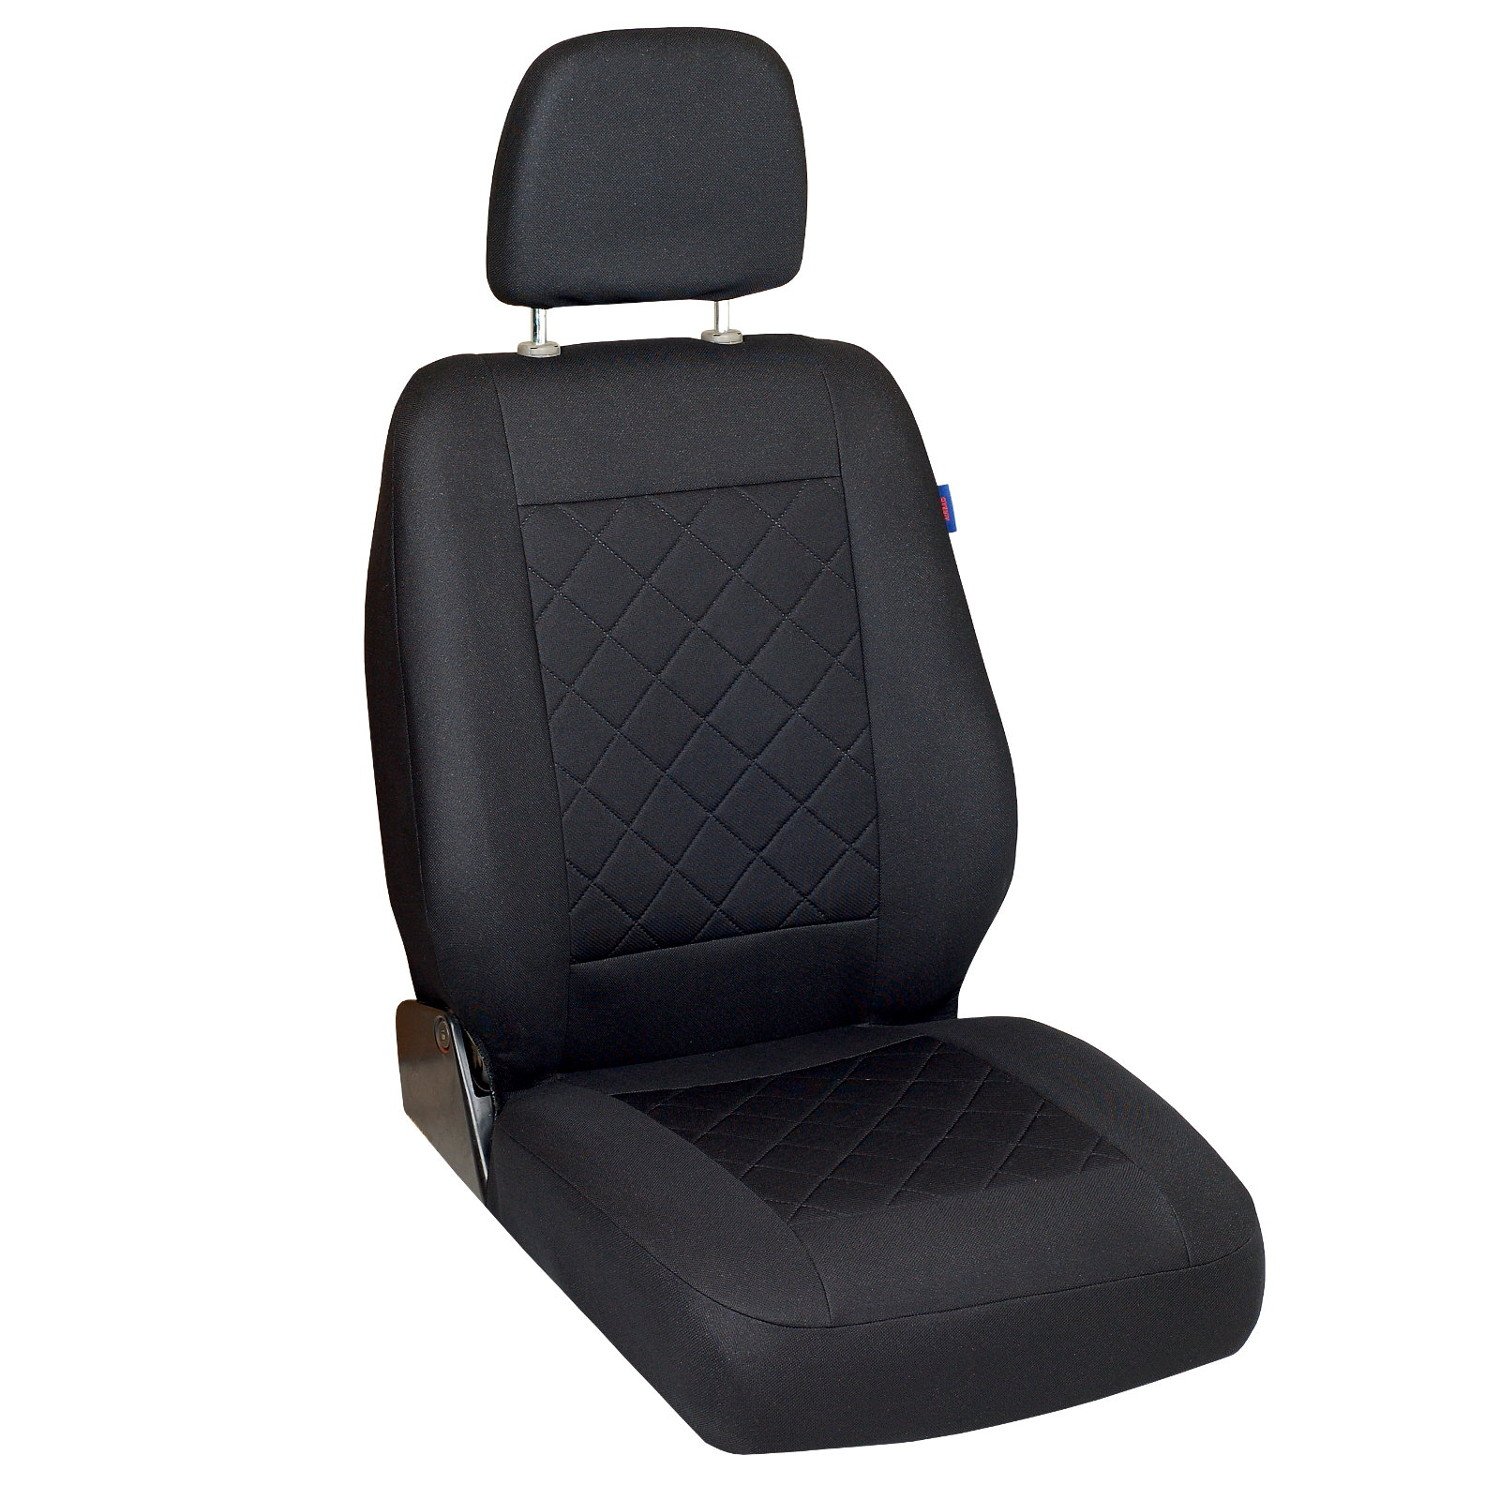 Zakschneider Trafic Sitzbezug - Fahrersitz - Farbe Premium Schwarz gepresstes Karomuster von Zakschneider